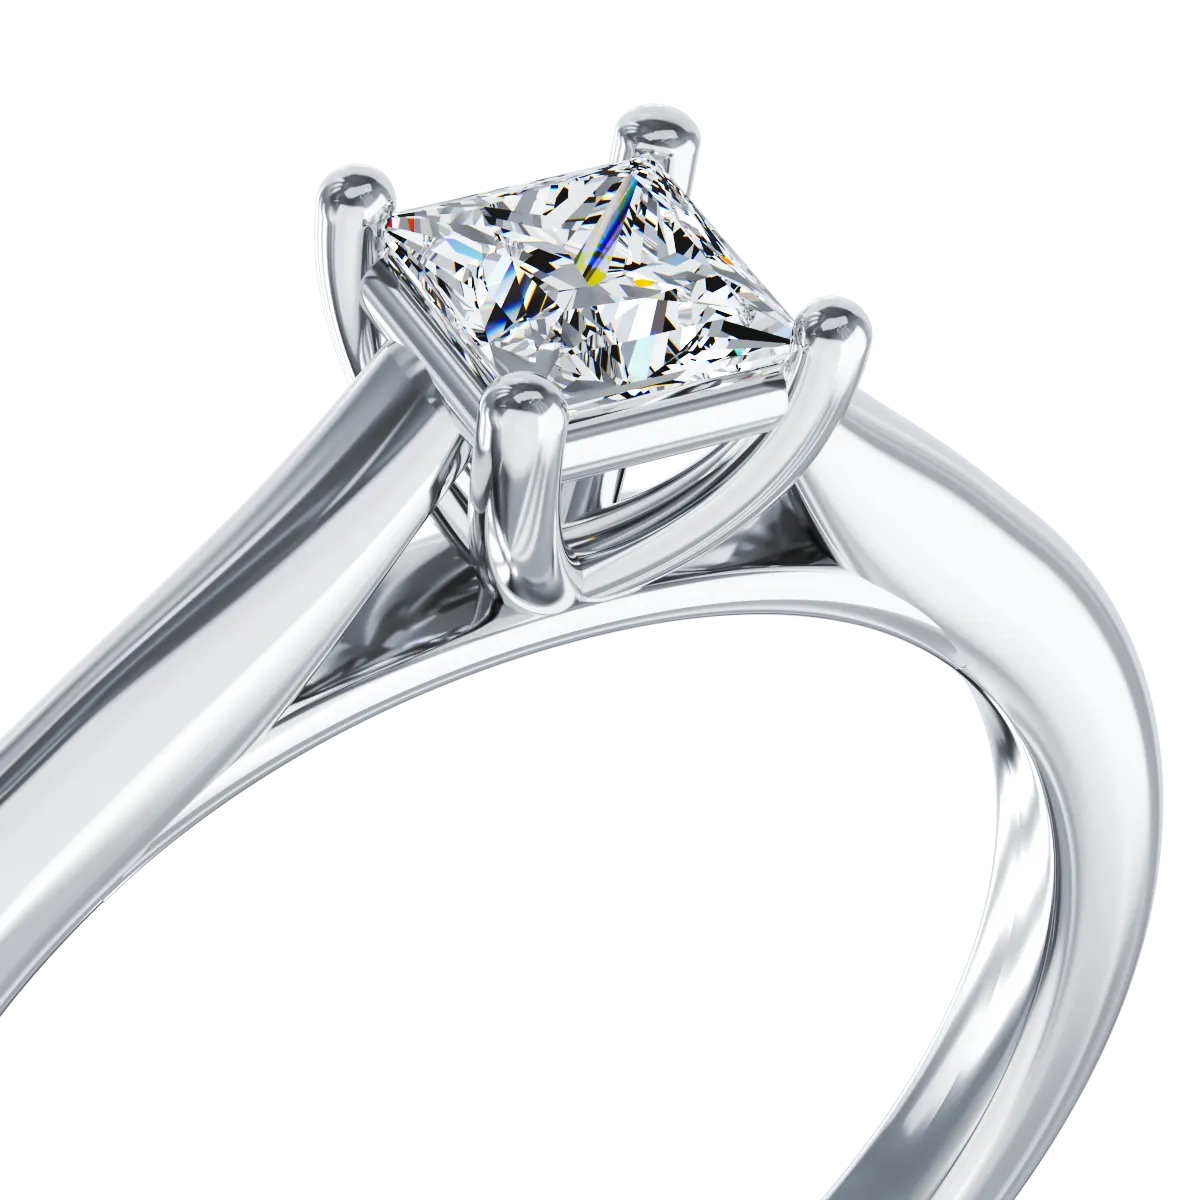 Inel de logodna din platina cu un diamant solitaire de 0.33ct